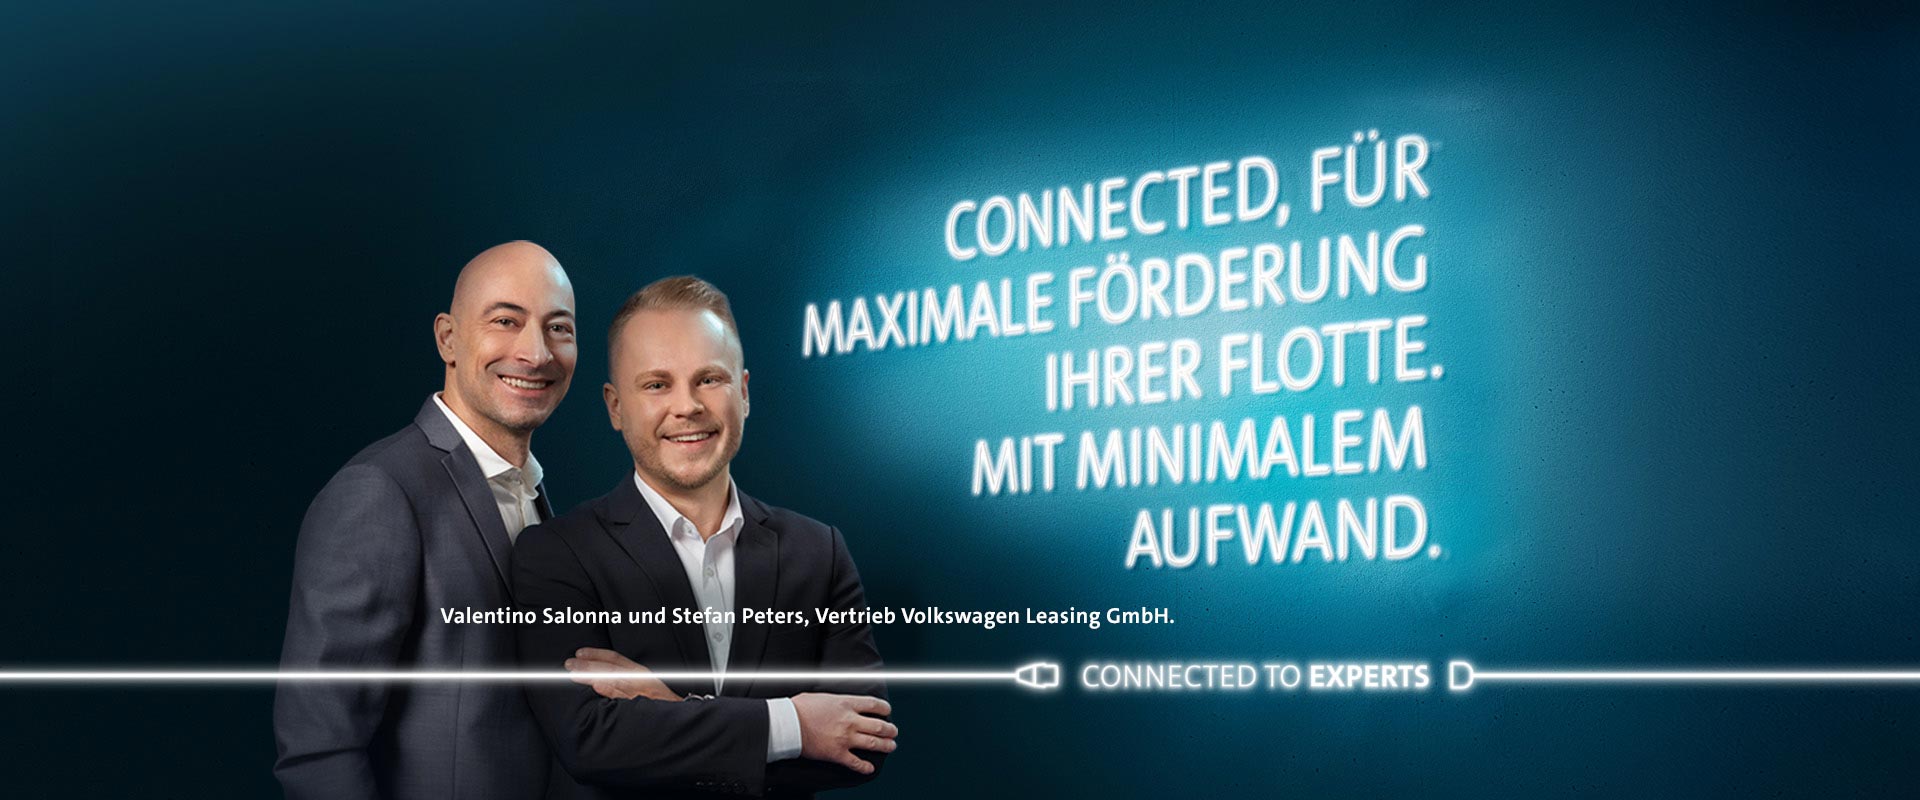 Valentino Salonna und Stefan Peters, Vertrieb Volkswagen Leasing GmbH.